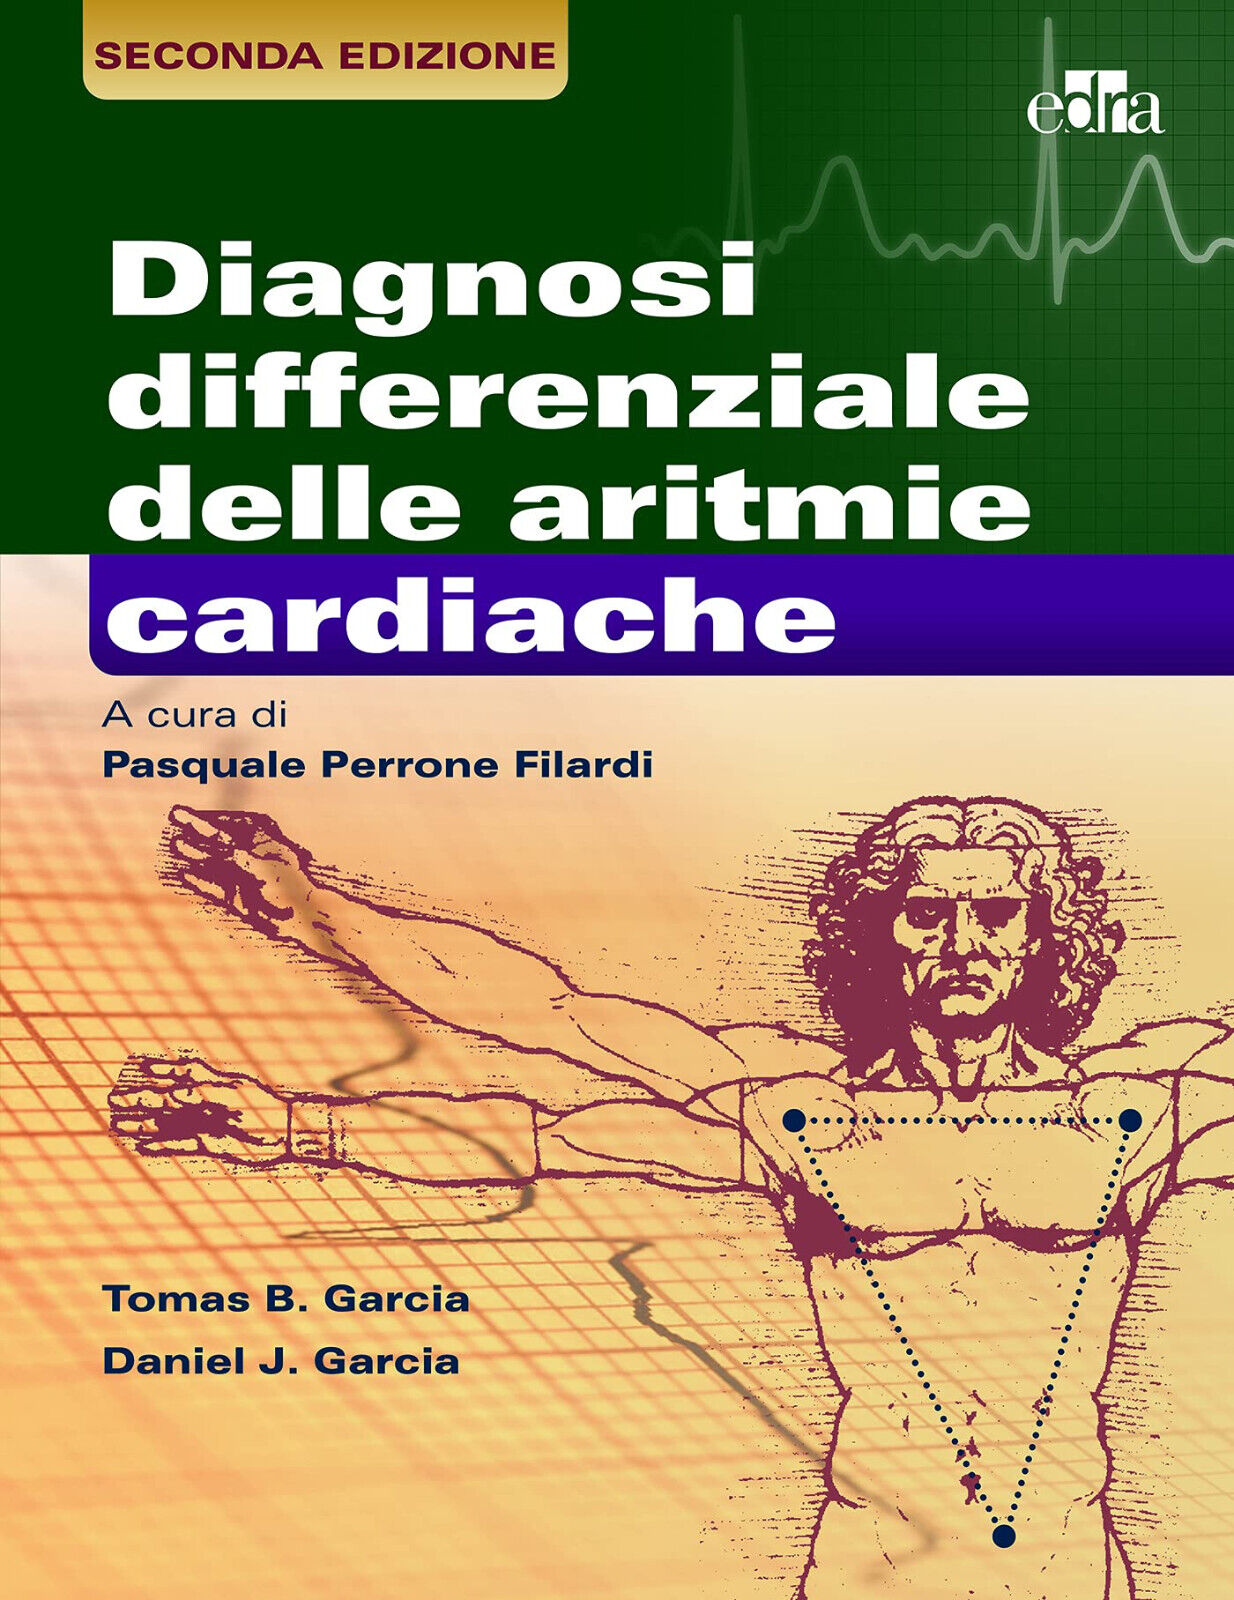 La diagnosi differenziale delle aritmie cardiache - Thomas B. Garcia - Edra,2021 libro usato